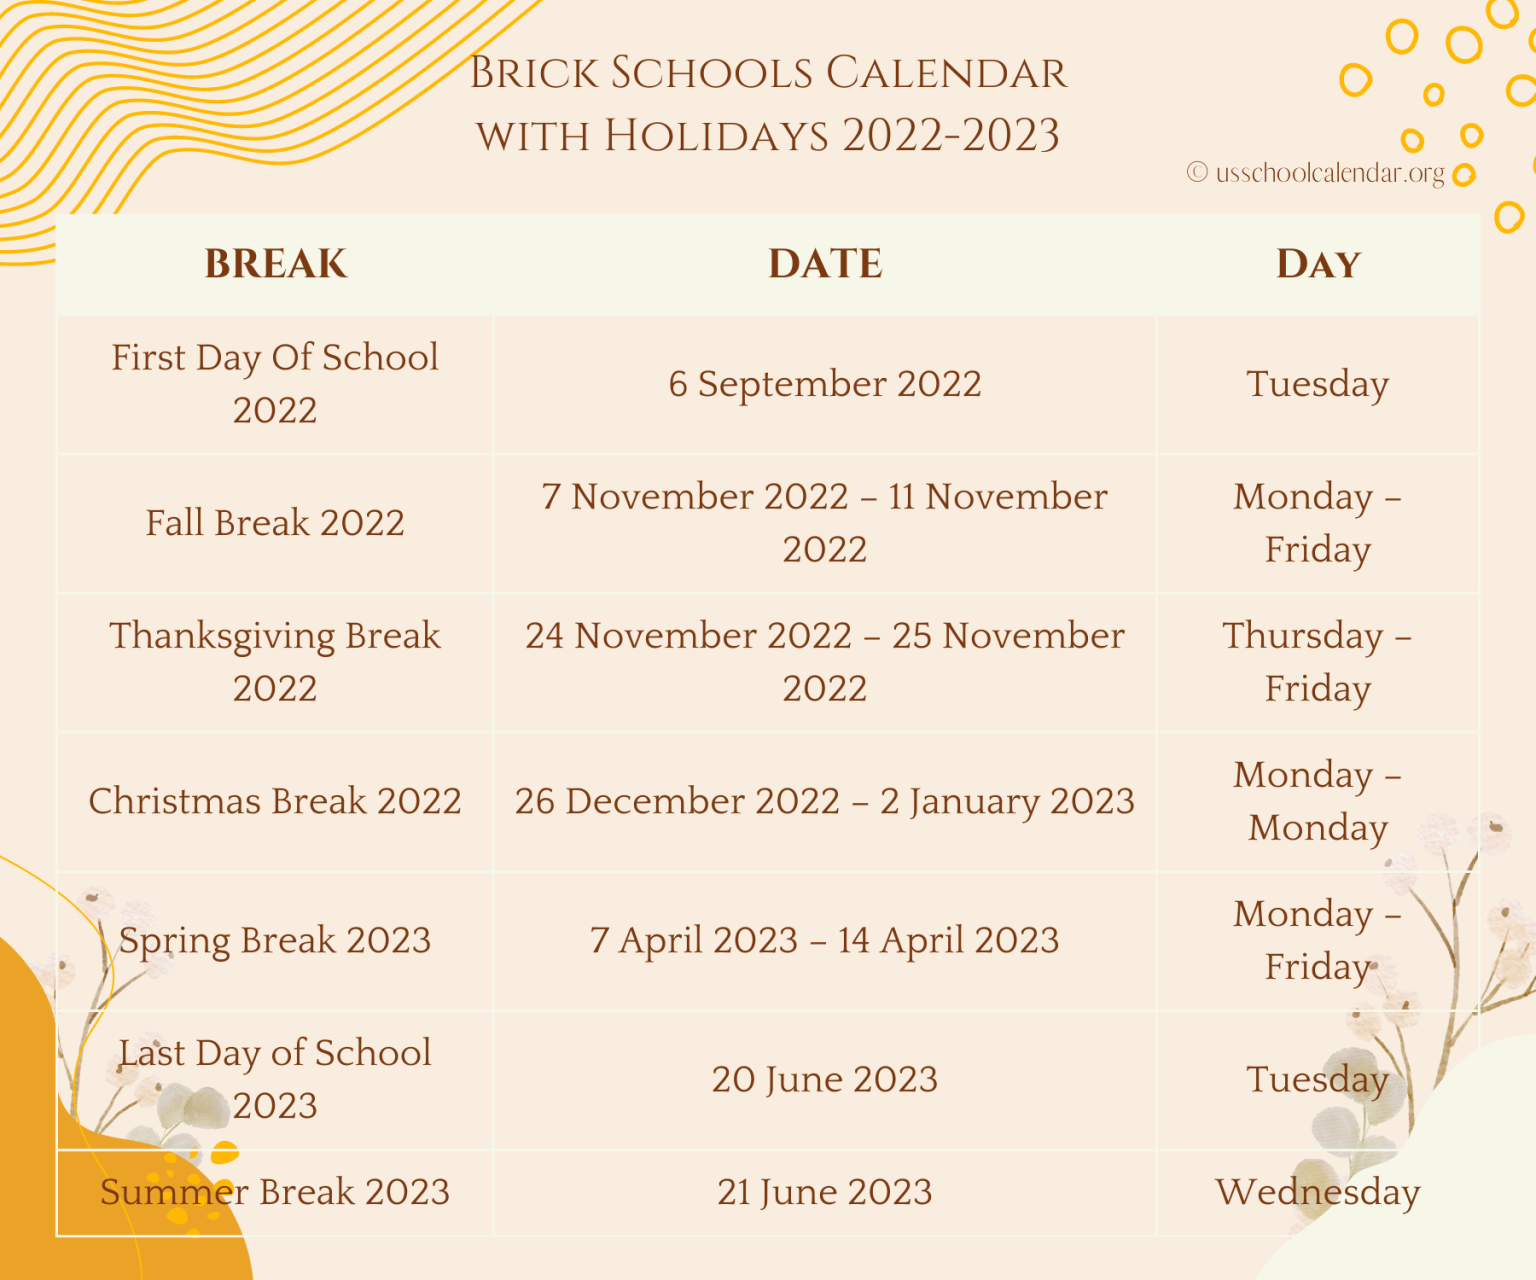 brick township schools calendar 2018